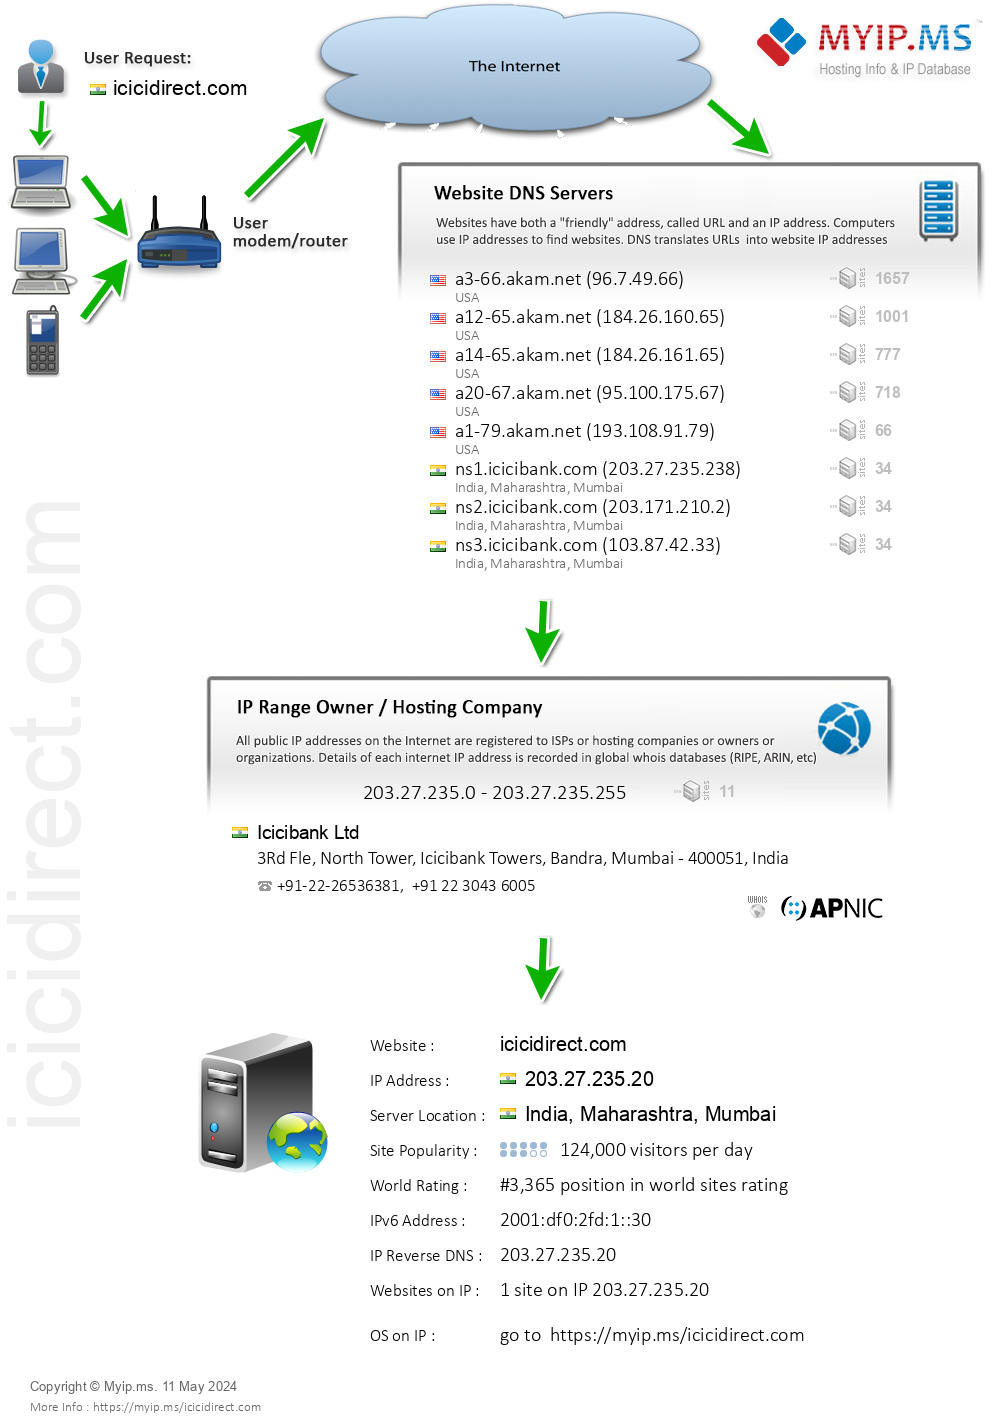 Icicidirect.com - Website Hosting Visual IP Diagram